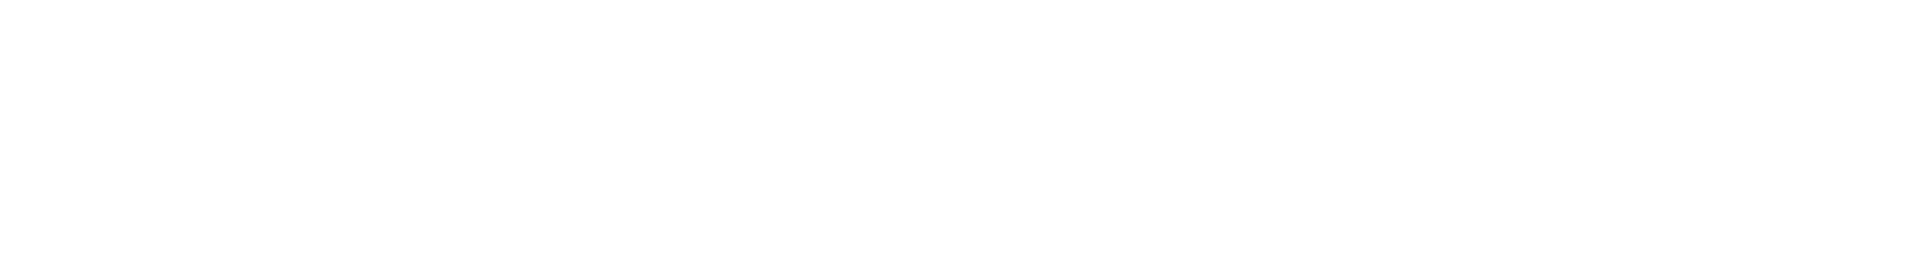 Koshers & Company Logo